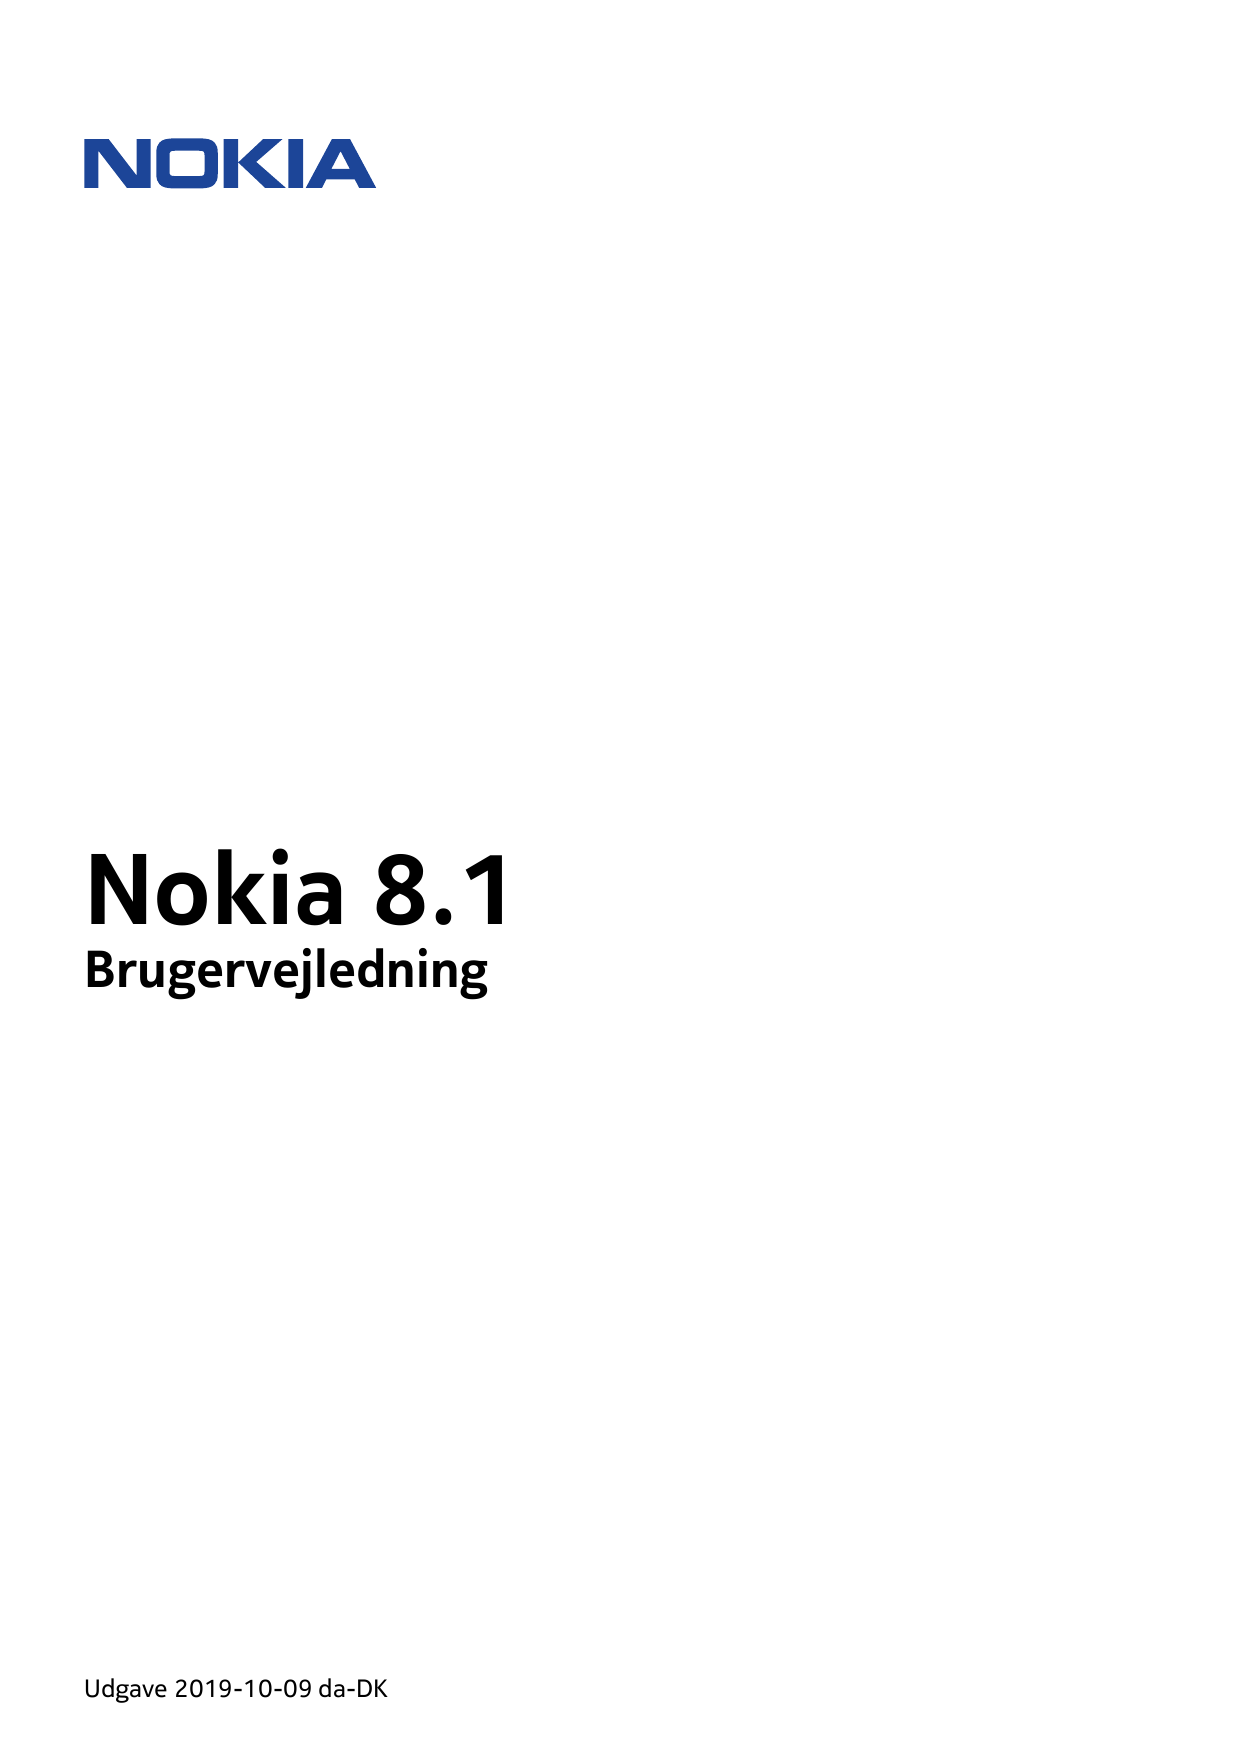 Nokia 8.1BrugervejledningUdgave 2019-10-09 da-DK